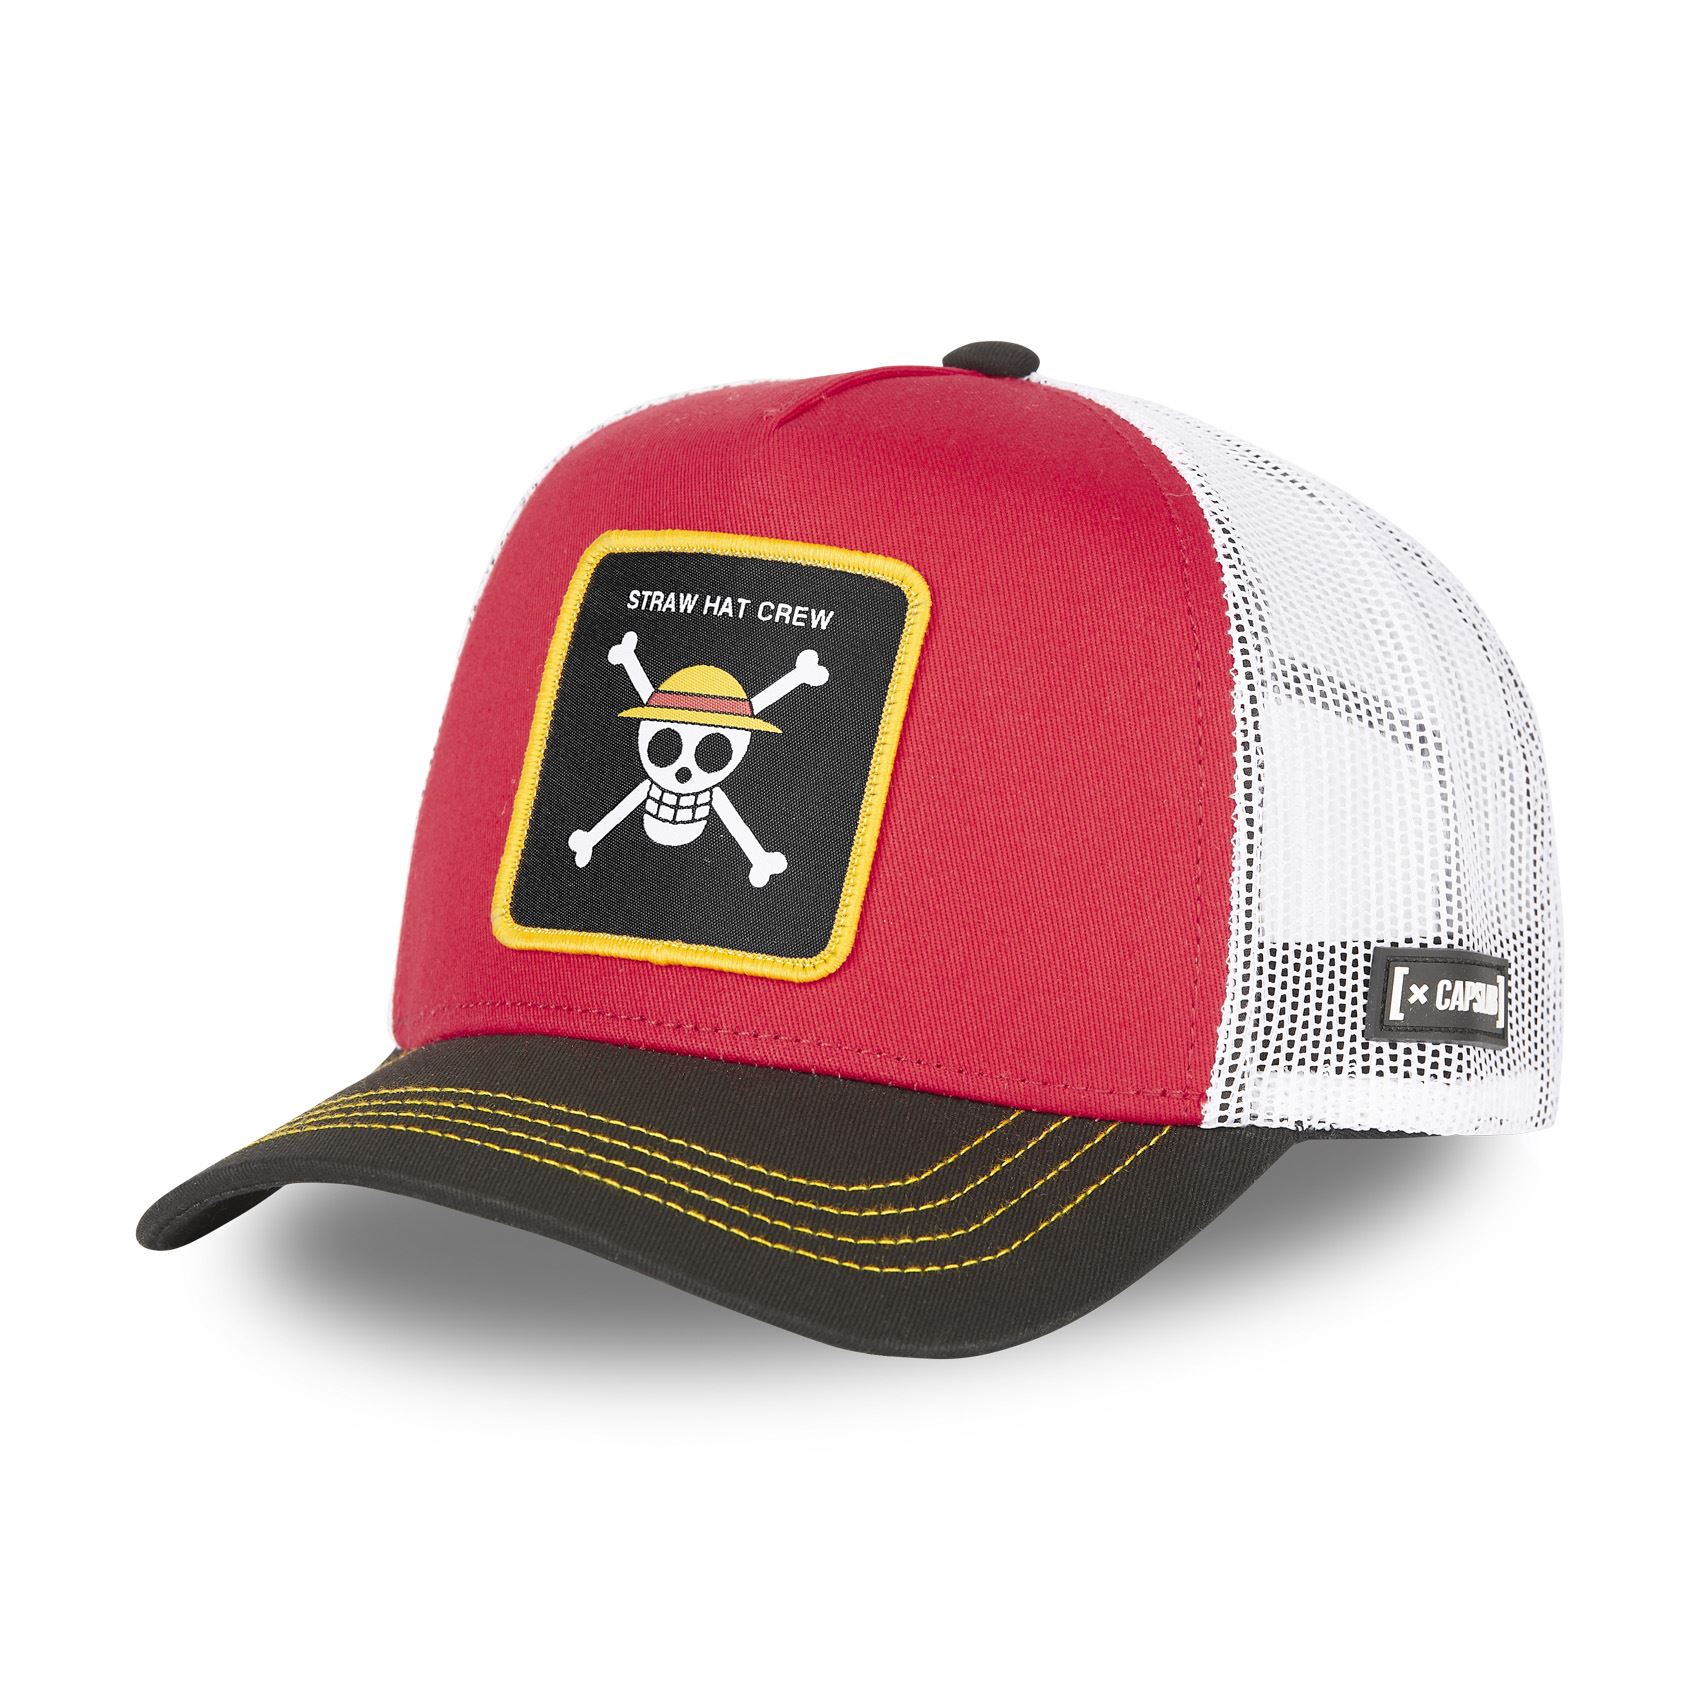 Straw Hat Crew One Piece Red Black White Trucker Cap Capslab